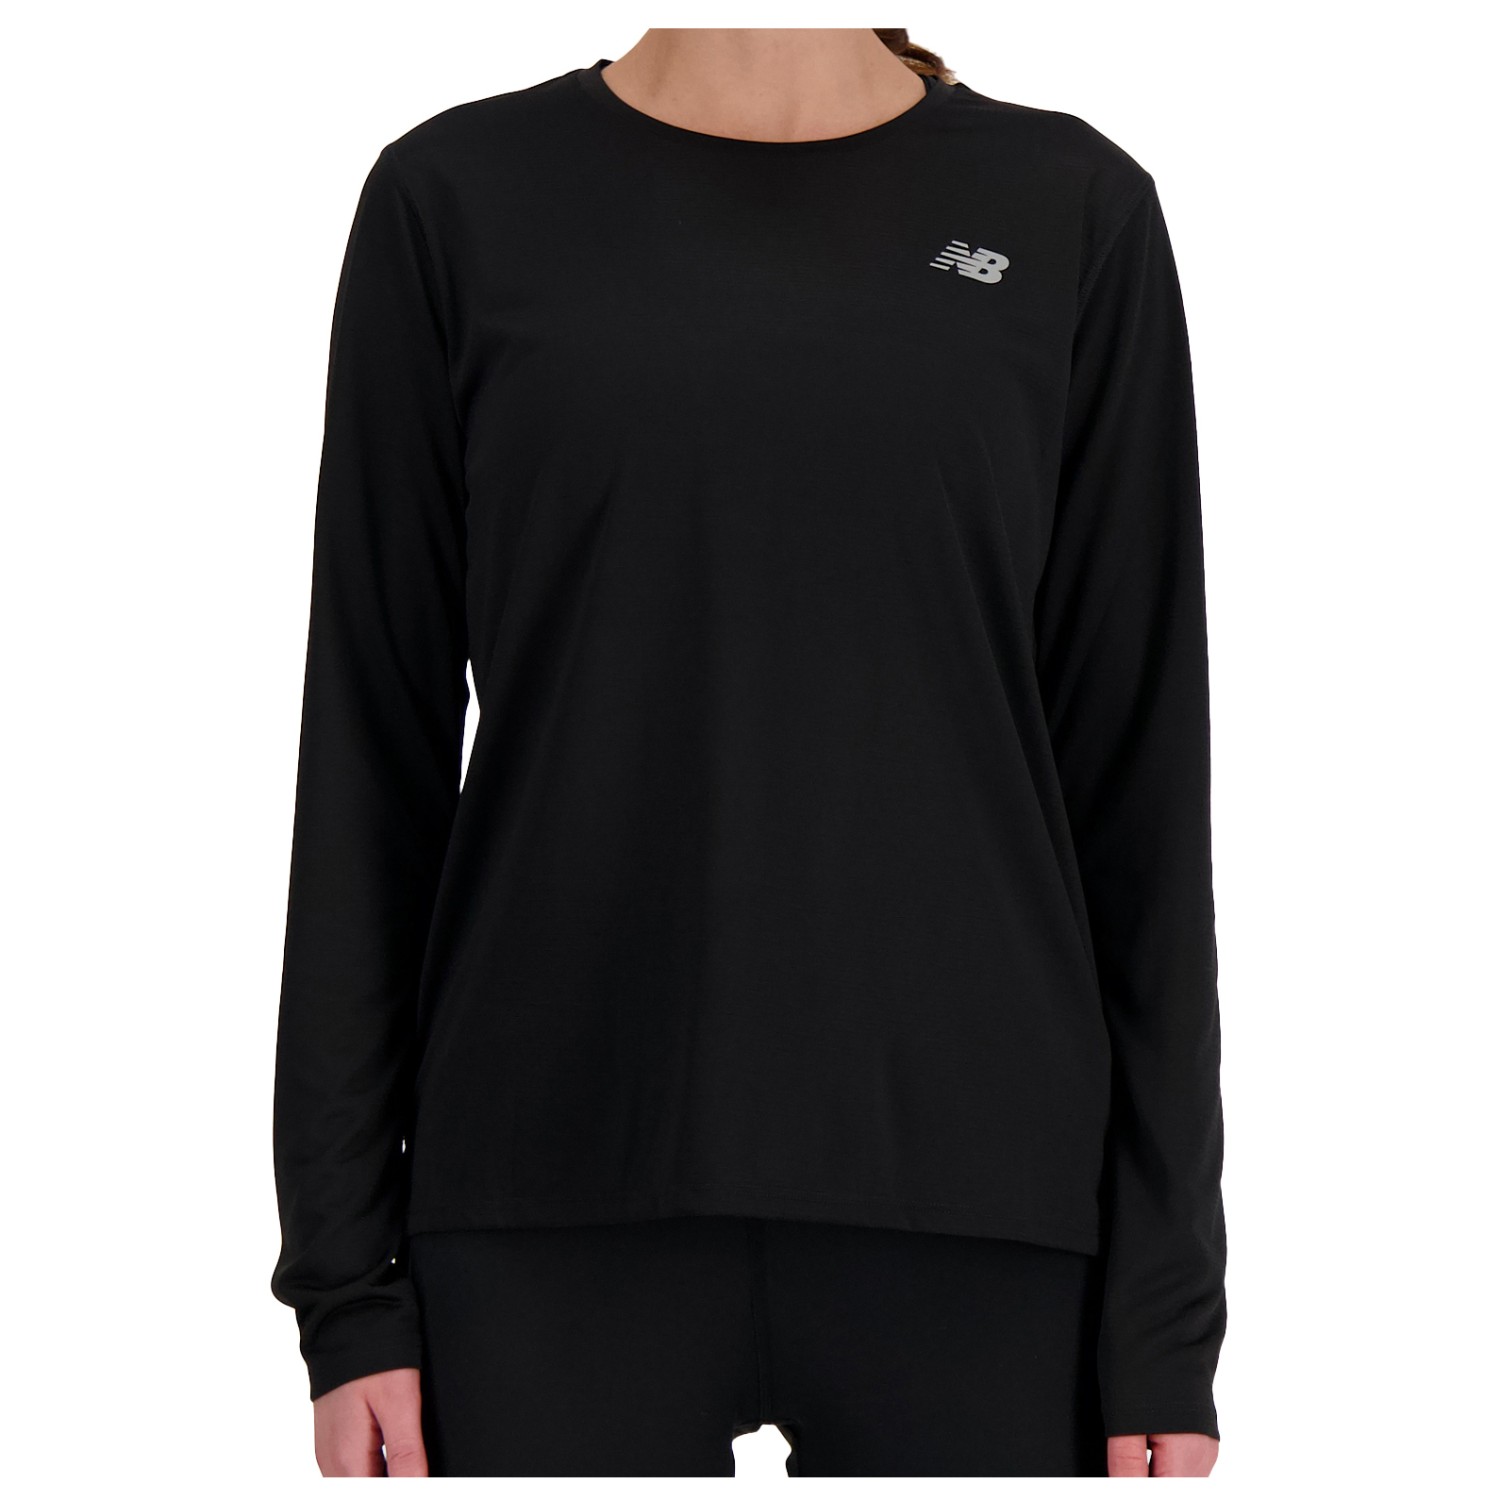 Беговая рубашка New Balance Women's Sport Essentials L/S, черный футболка new balance размер l [int] коричневый